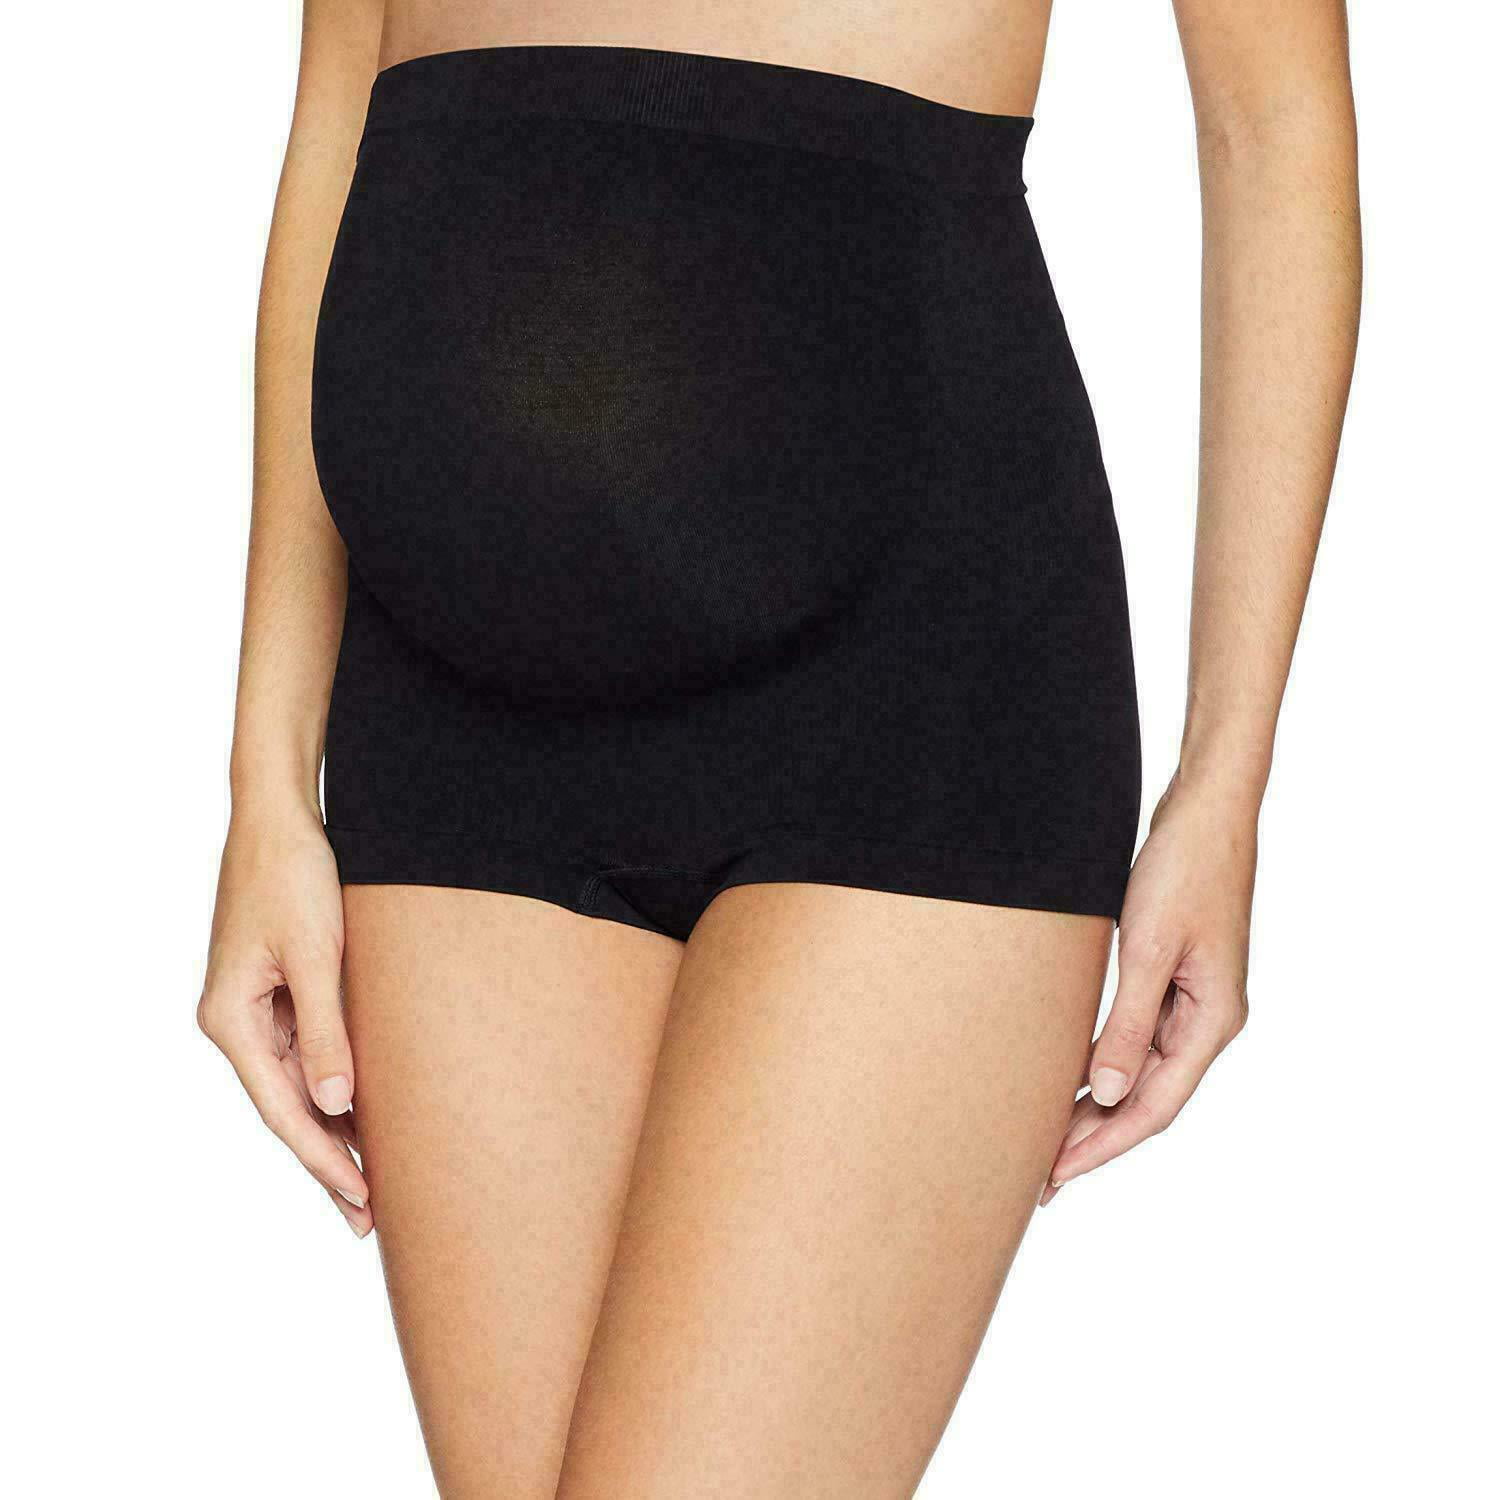 Pervobs Women Stretchy Comfort Fit Slimming Underwear Abdomen High Waist Hip Body Corset Control Briefs Shorts 